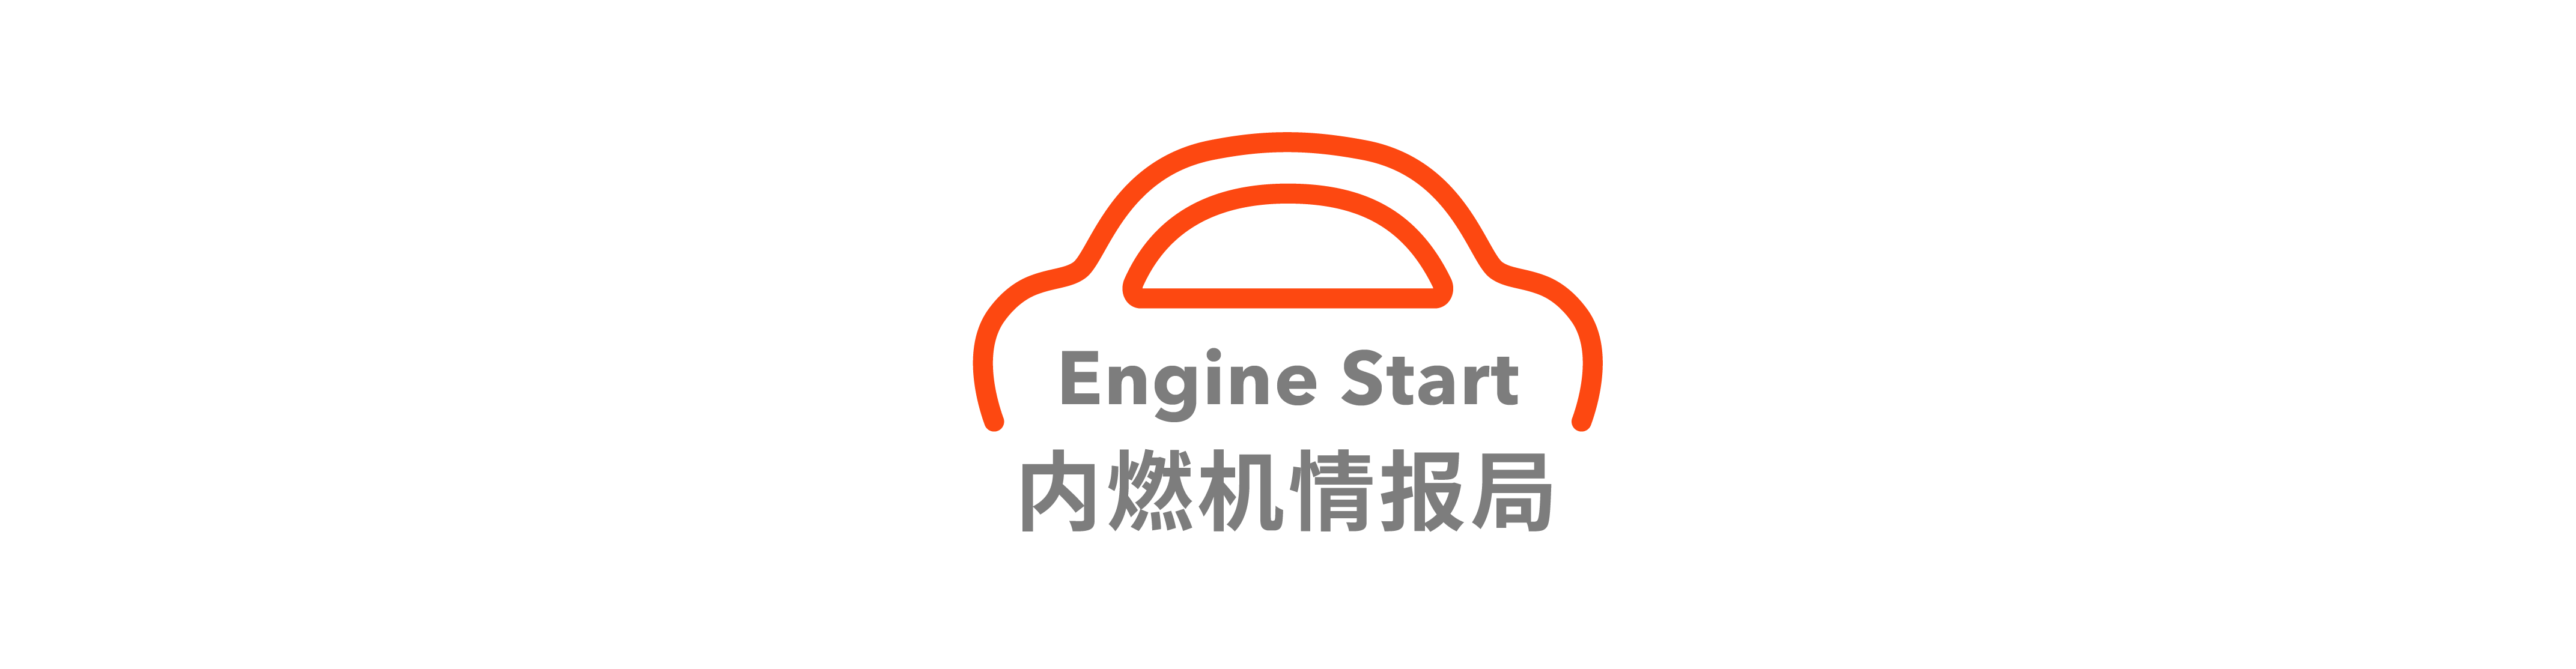 22 - Esposizione al test sulla neve per auto Xiaomi / FF ha firmato un accordo strategico con il debutto di Huanggang City / Corvette E-Ray